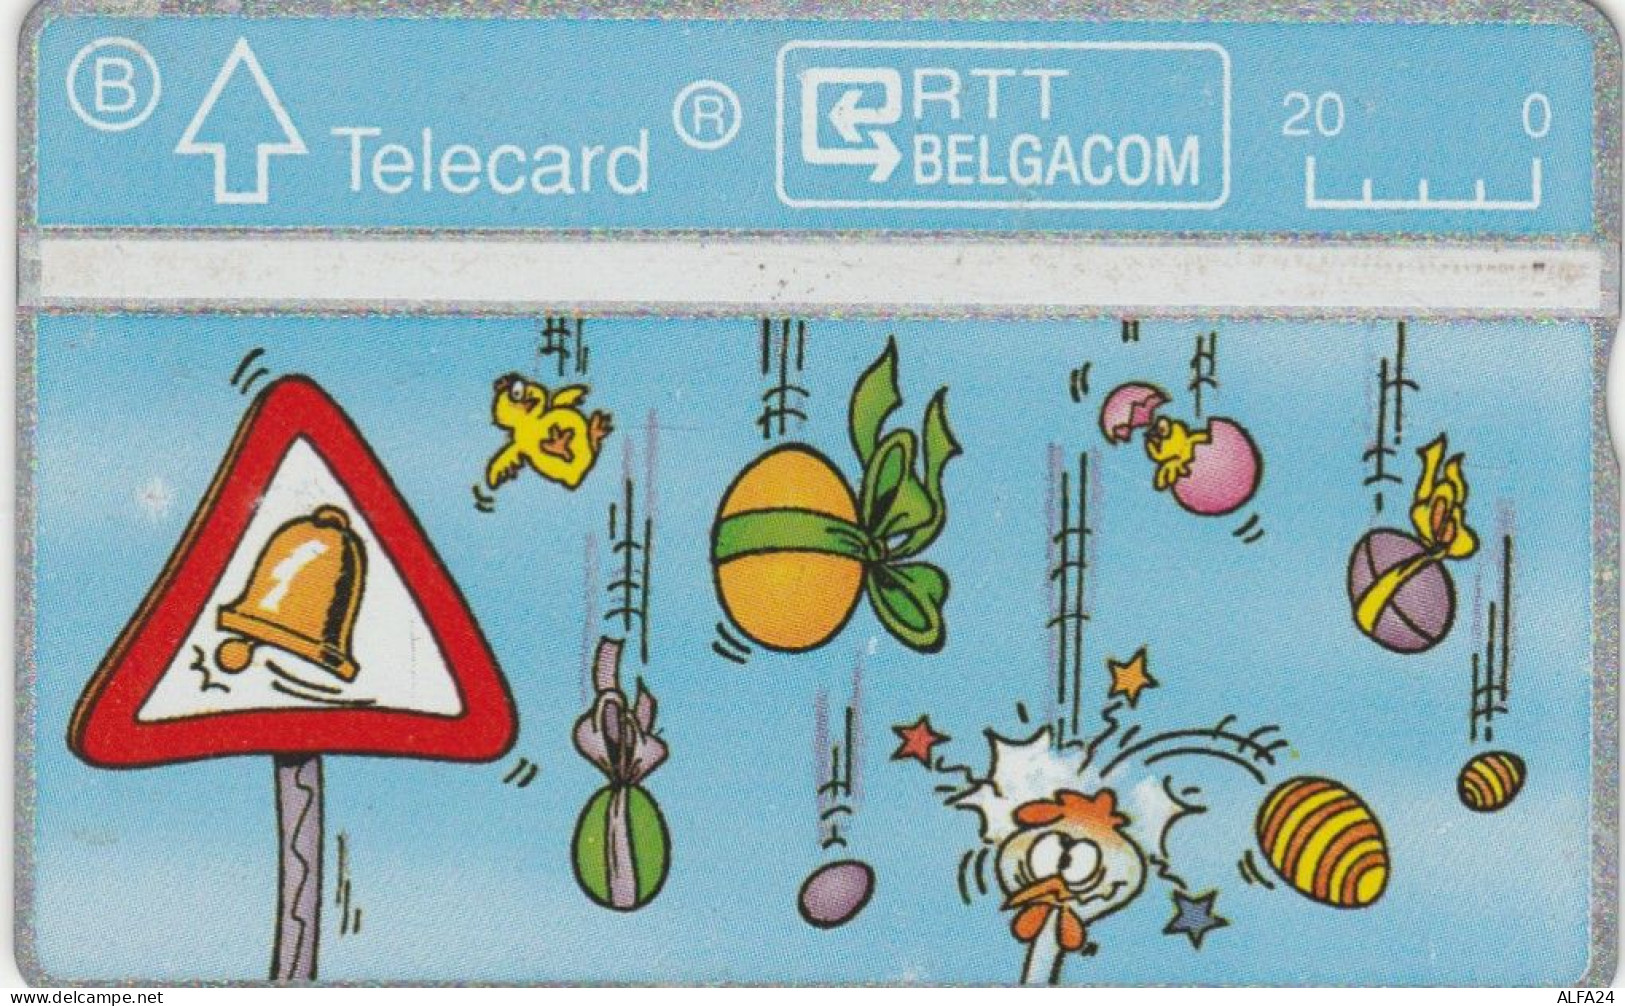 PHONE CARD BELGIO CARTOONS (E95.15.6 - Senza Chip